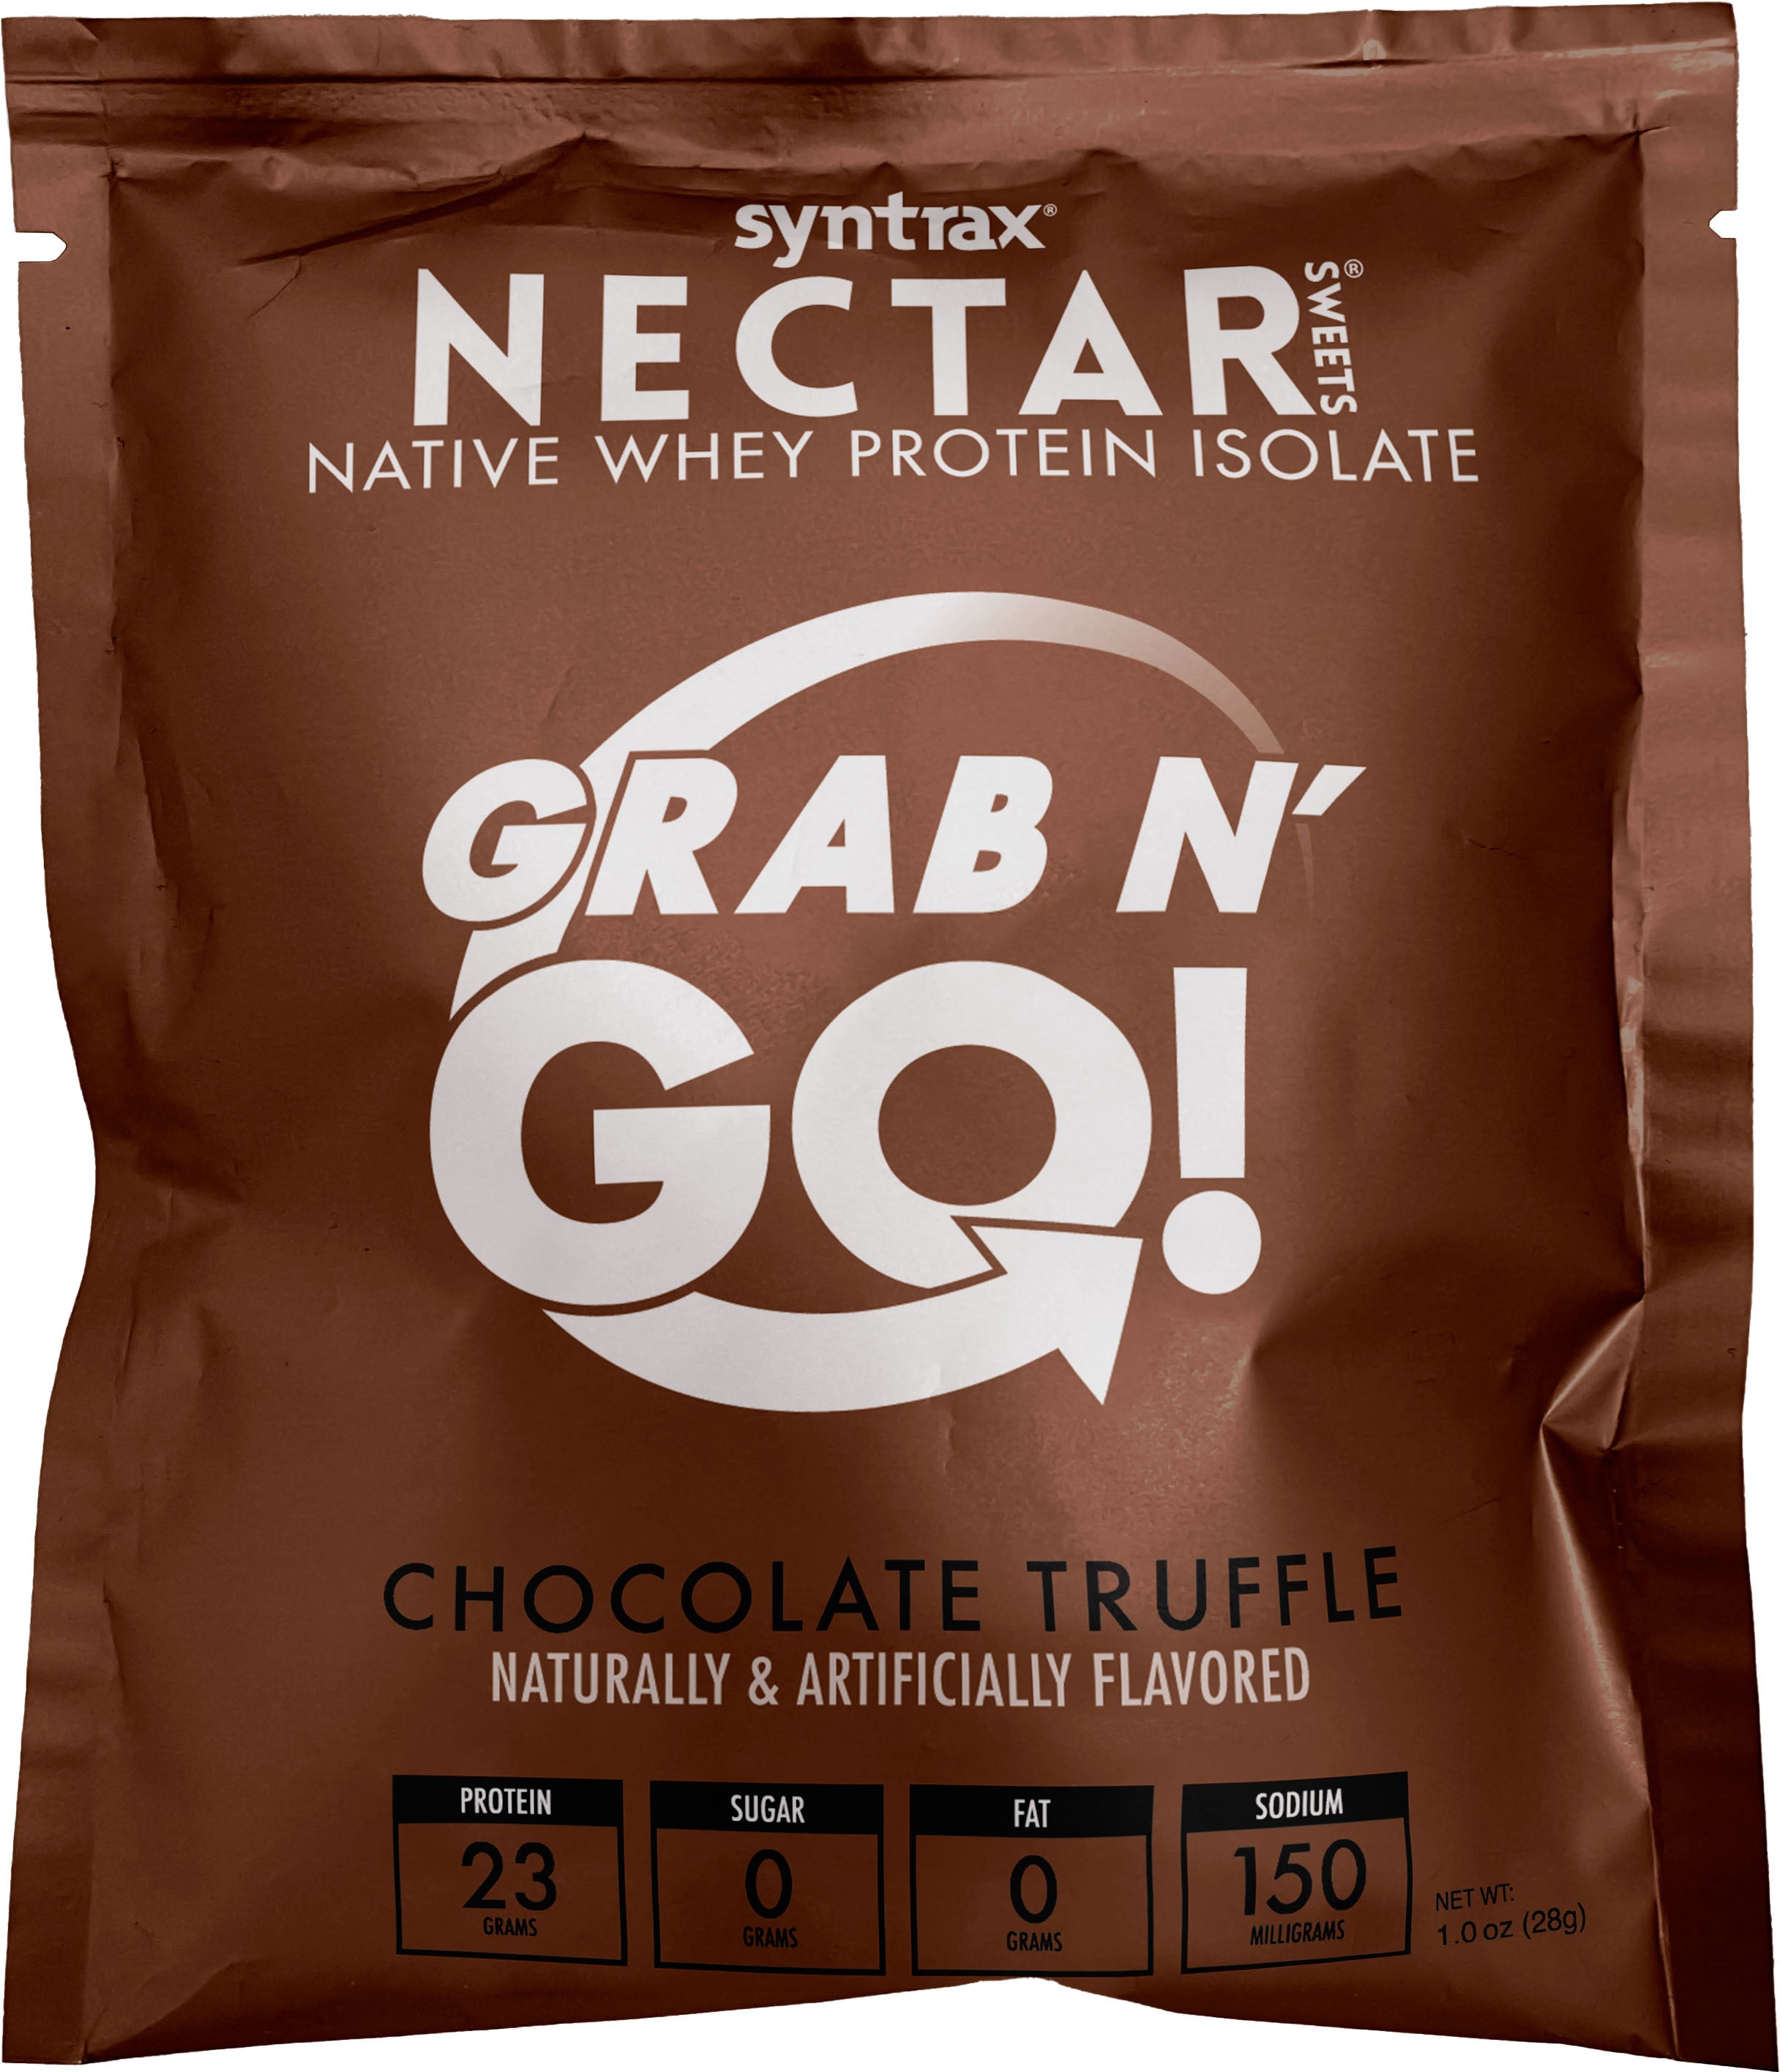 Syntrax Nectar Protein Powder Grab N' Go Box - Chocolate Truffle